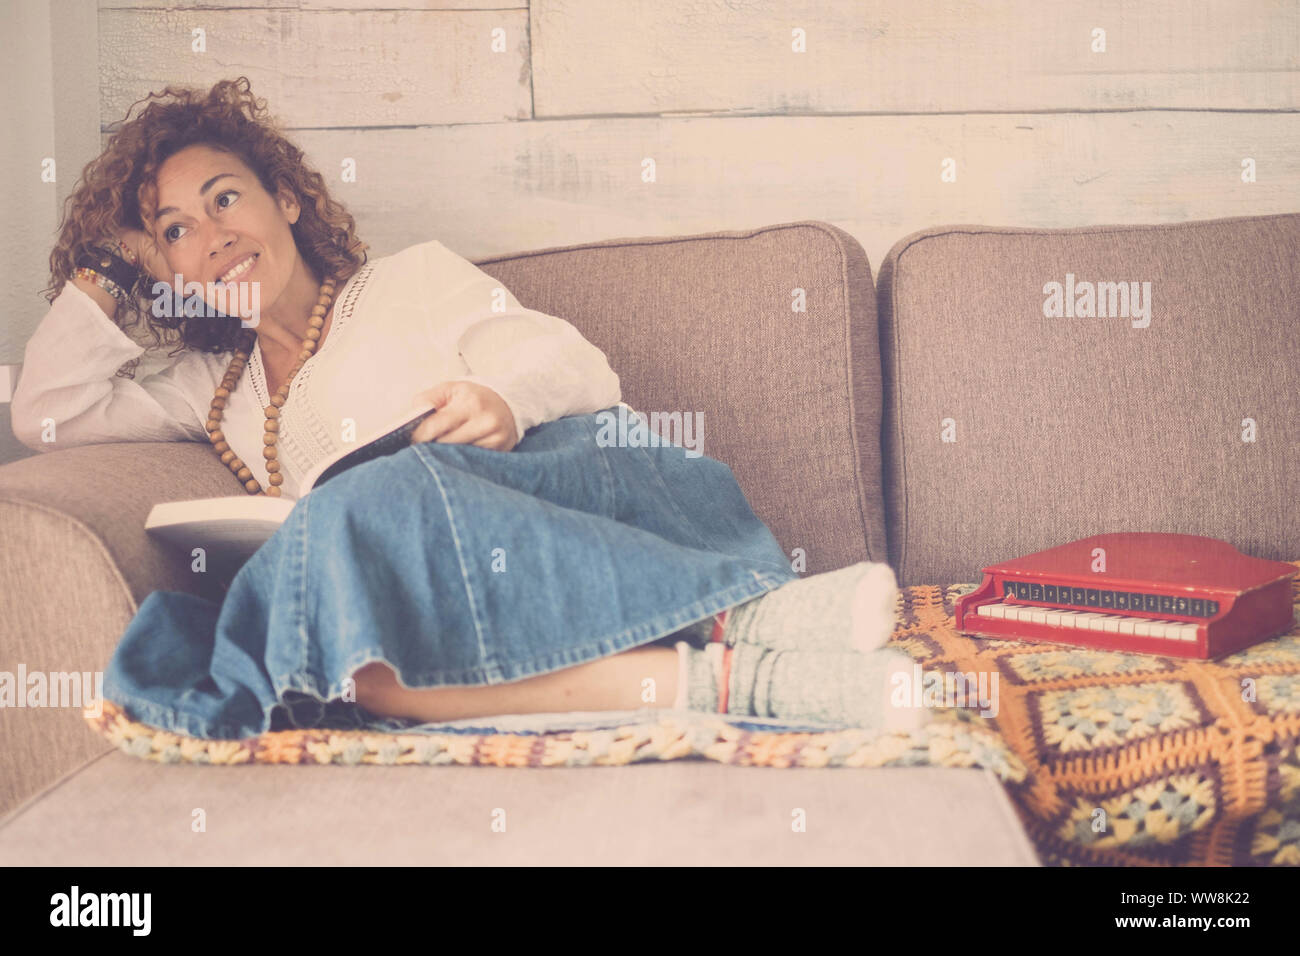 Schöne kaukasische Frau legte sich entspannt auf dem Sofa zu Hause sucht außerhalb des Fensters. kleine Pianobar Spielzeug zu ihren Füßen. Kreativität Gefühl für schöne Mädchen in Home Freizeit indoor Stockfoto